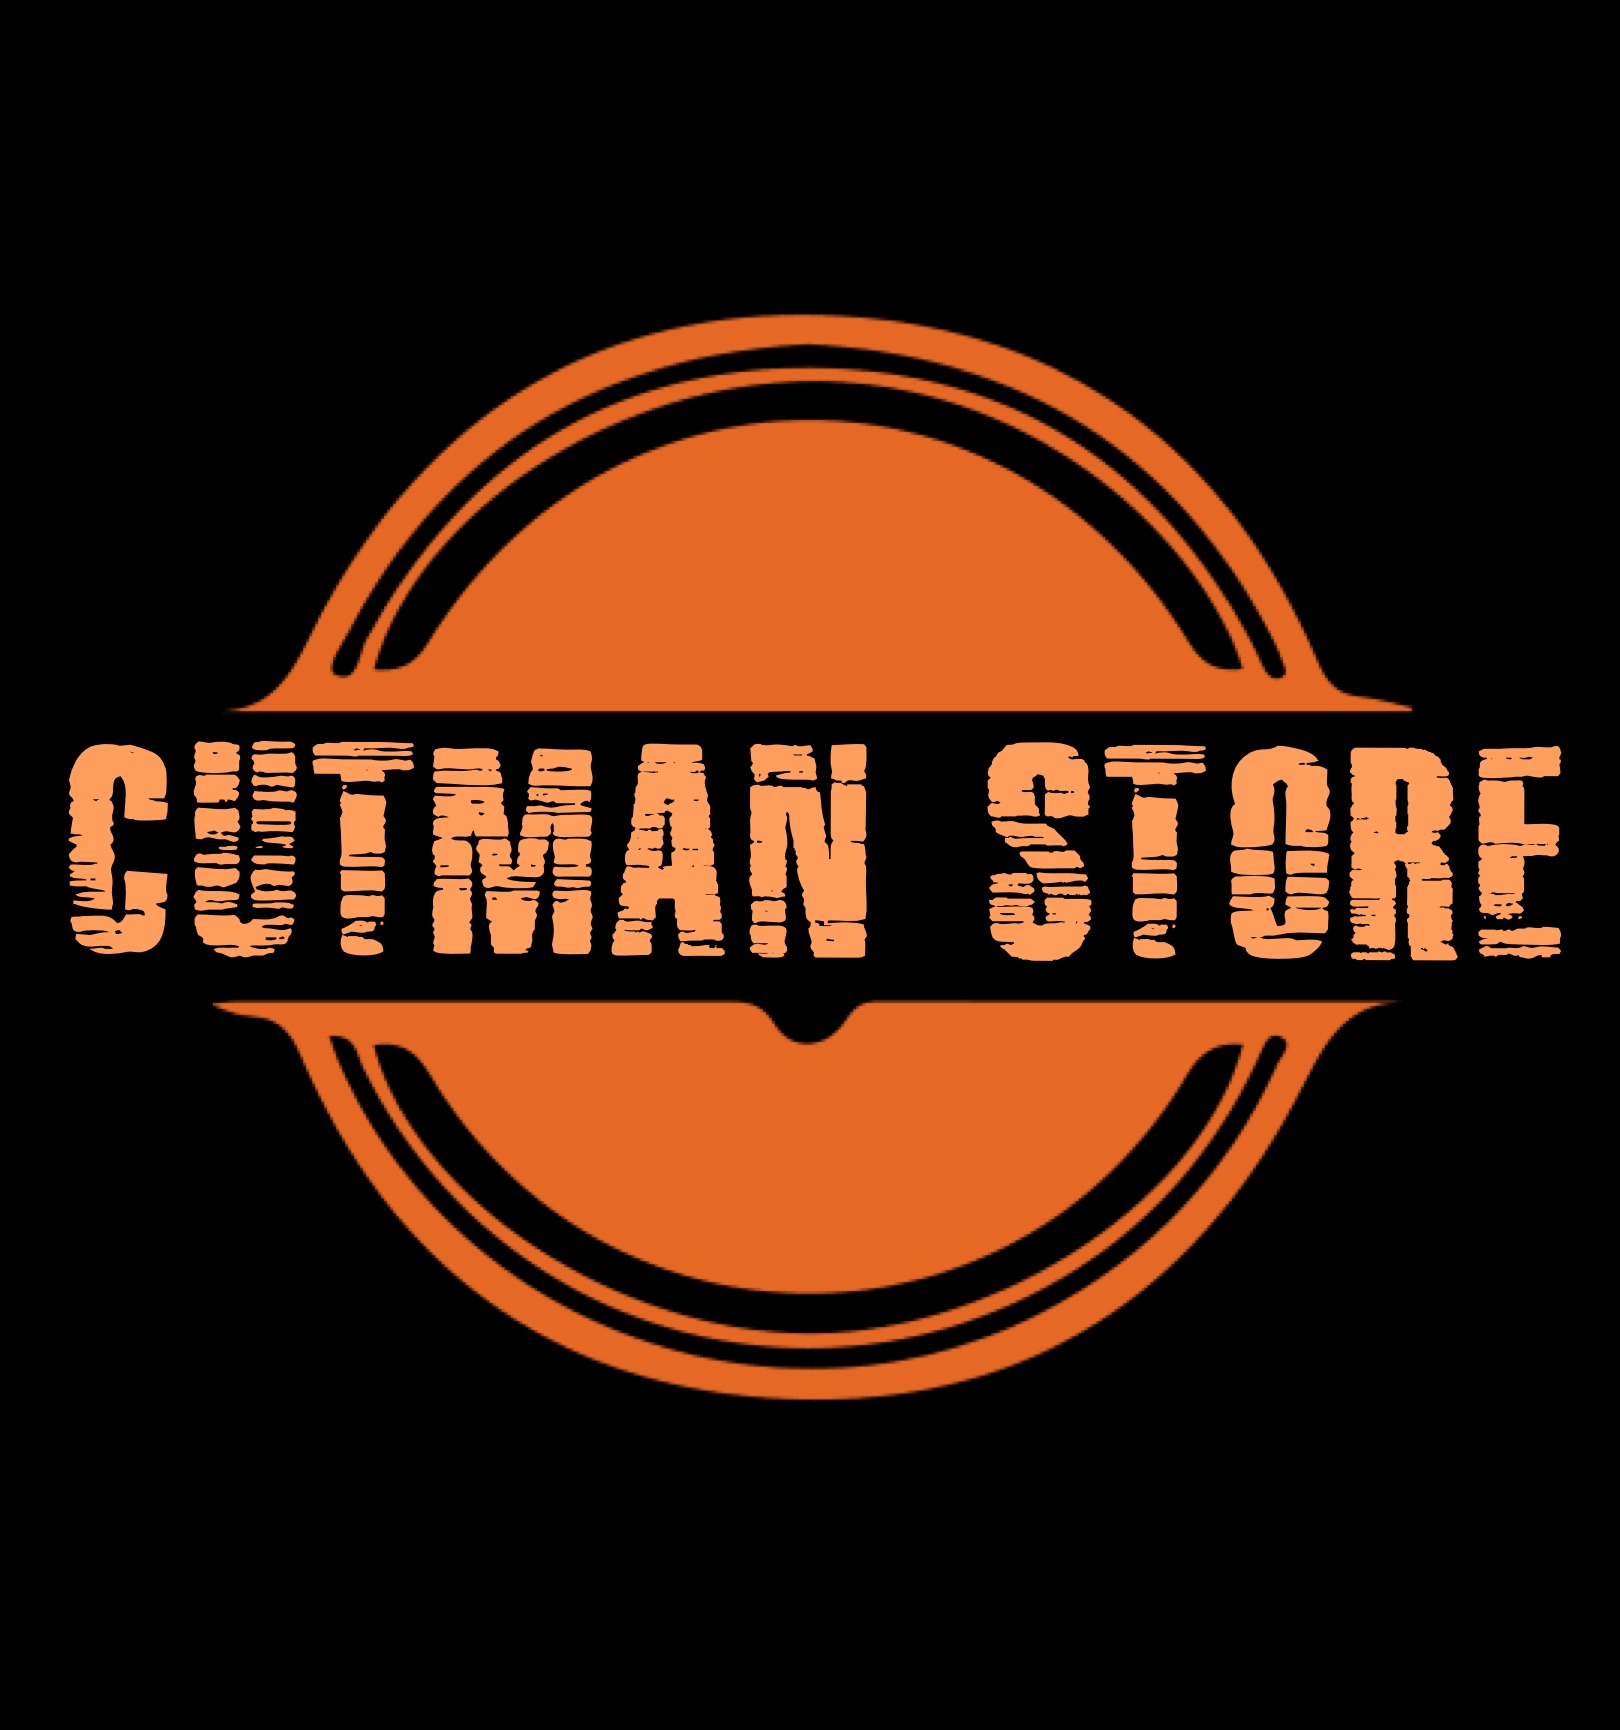 Cutman Store 